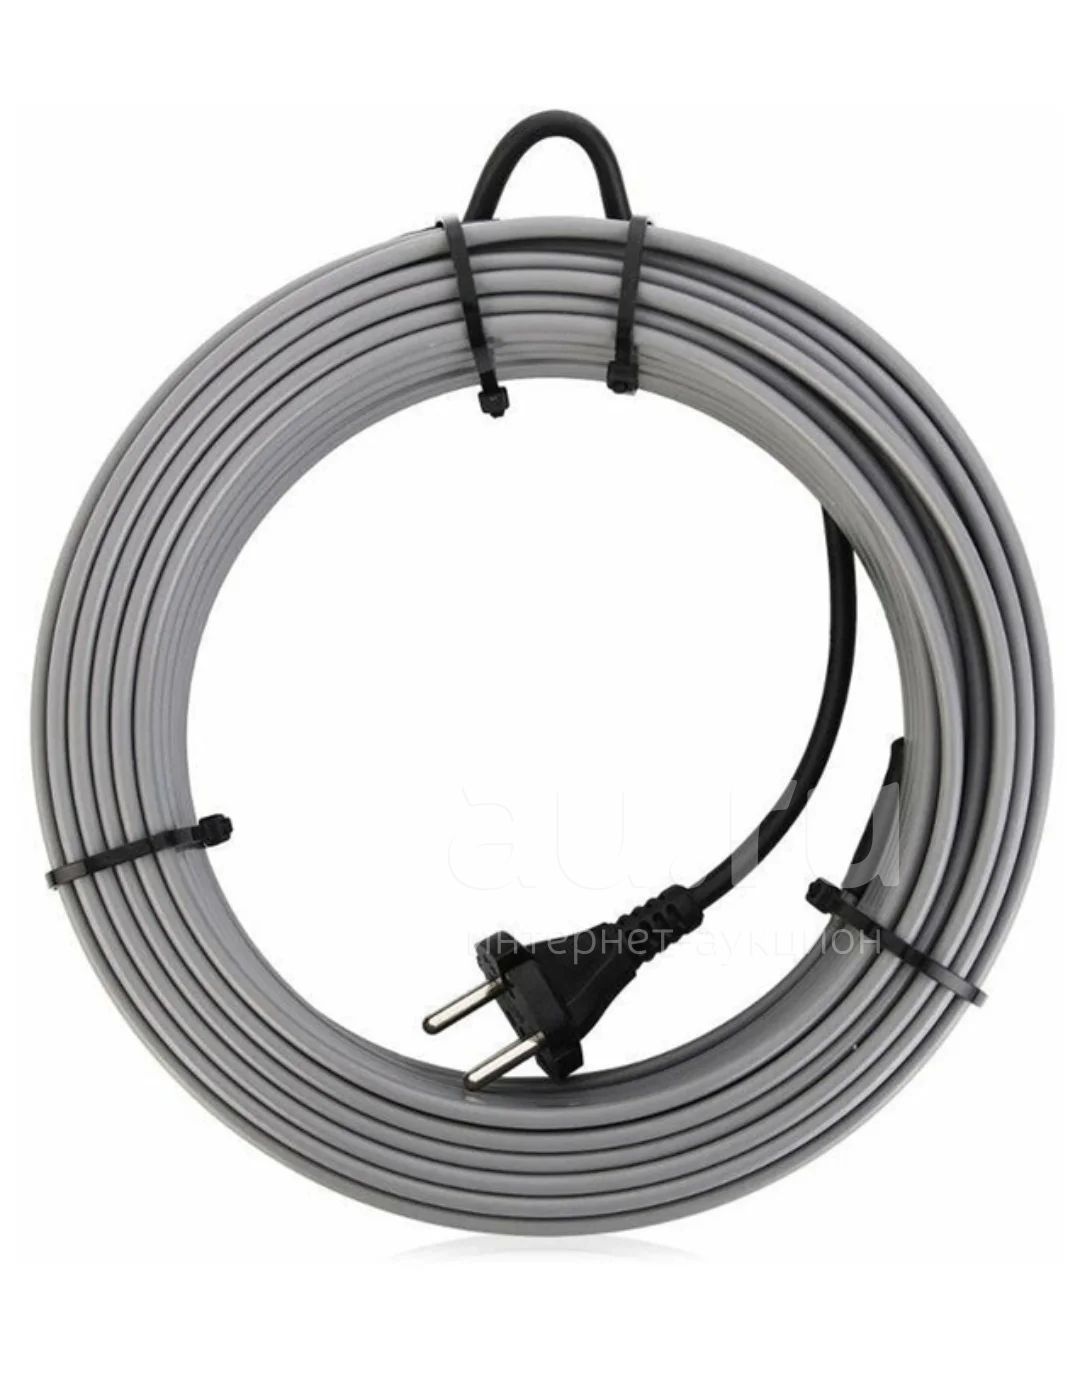 Греющий кабель питьевой. Греющий кабель саморегулирующийся обогрев Люкс Standart на трубу 16 Вт/м 15 м. Саморегулирующийся греющий кабель в трубу. Греющий кабель для водопровода SRL 16-2 монтаж. Греющий кабель 100 метров для водопровода.